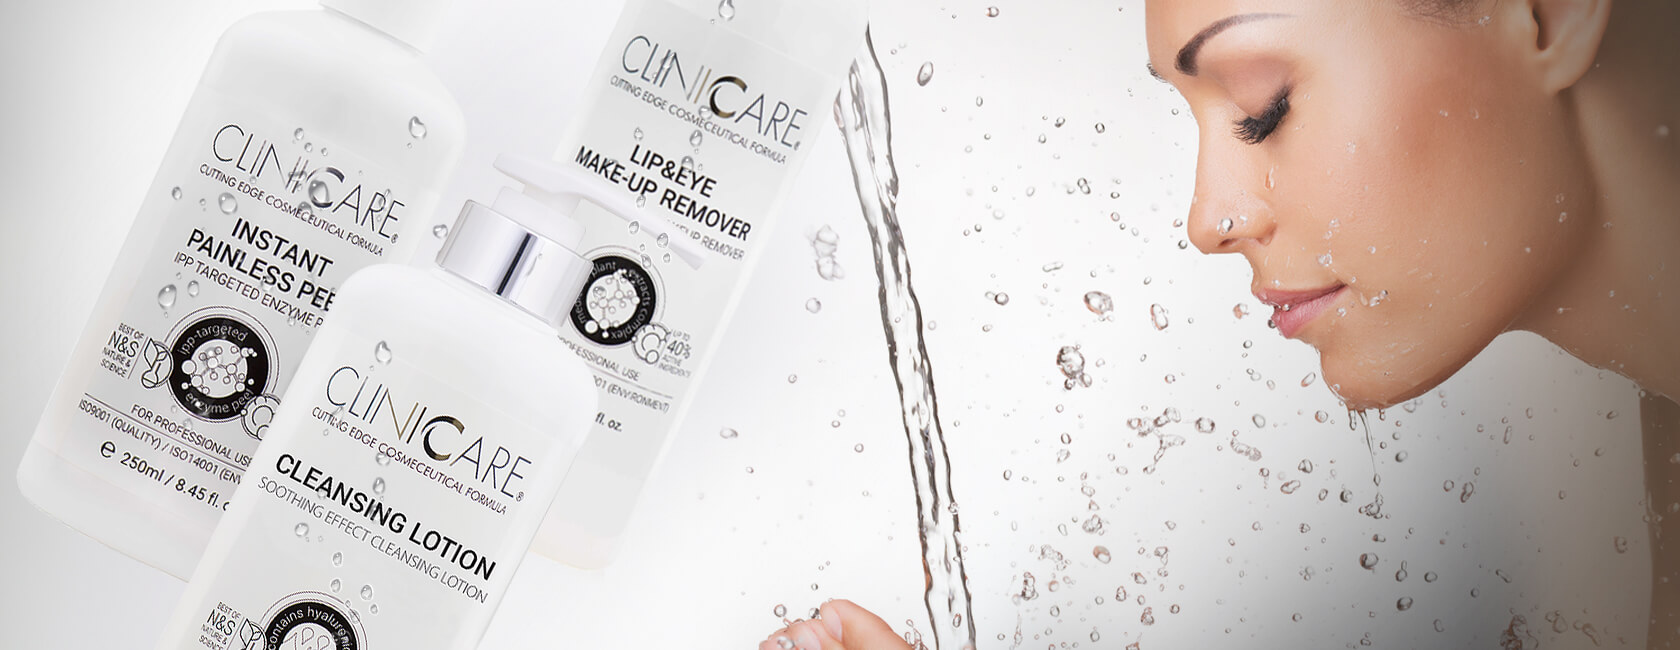 Cliniccare - Advanced Skincare | Germaine de Capuccini | Luxurious Skin Care